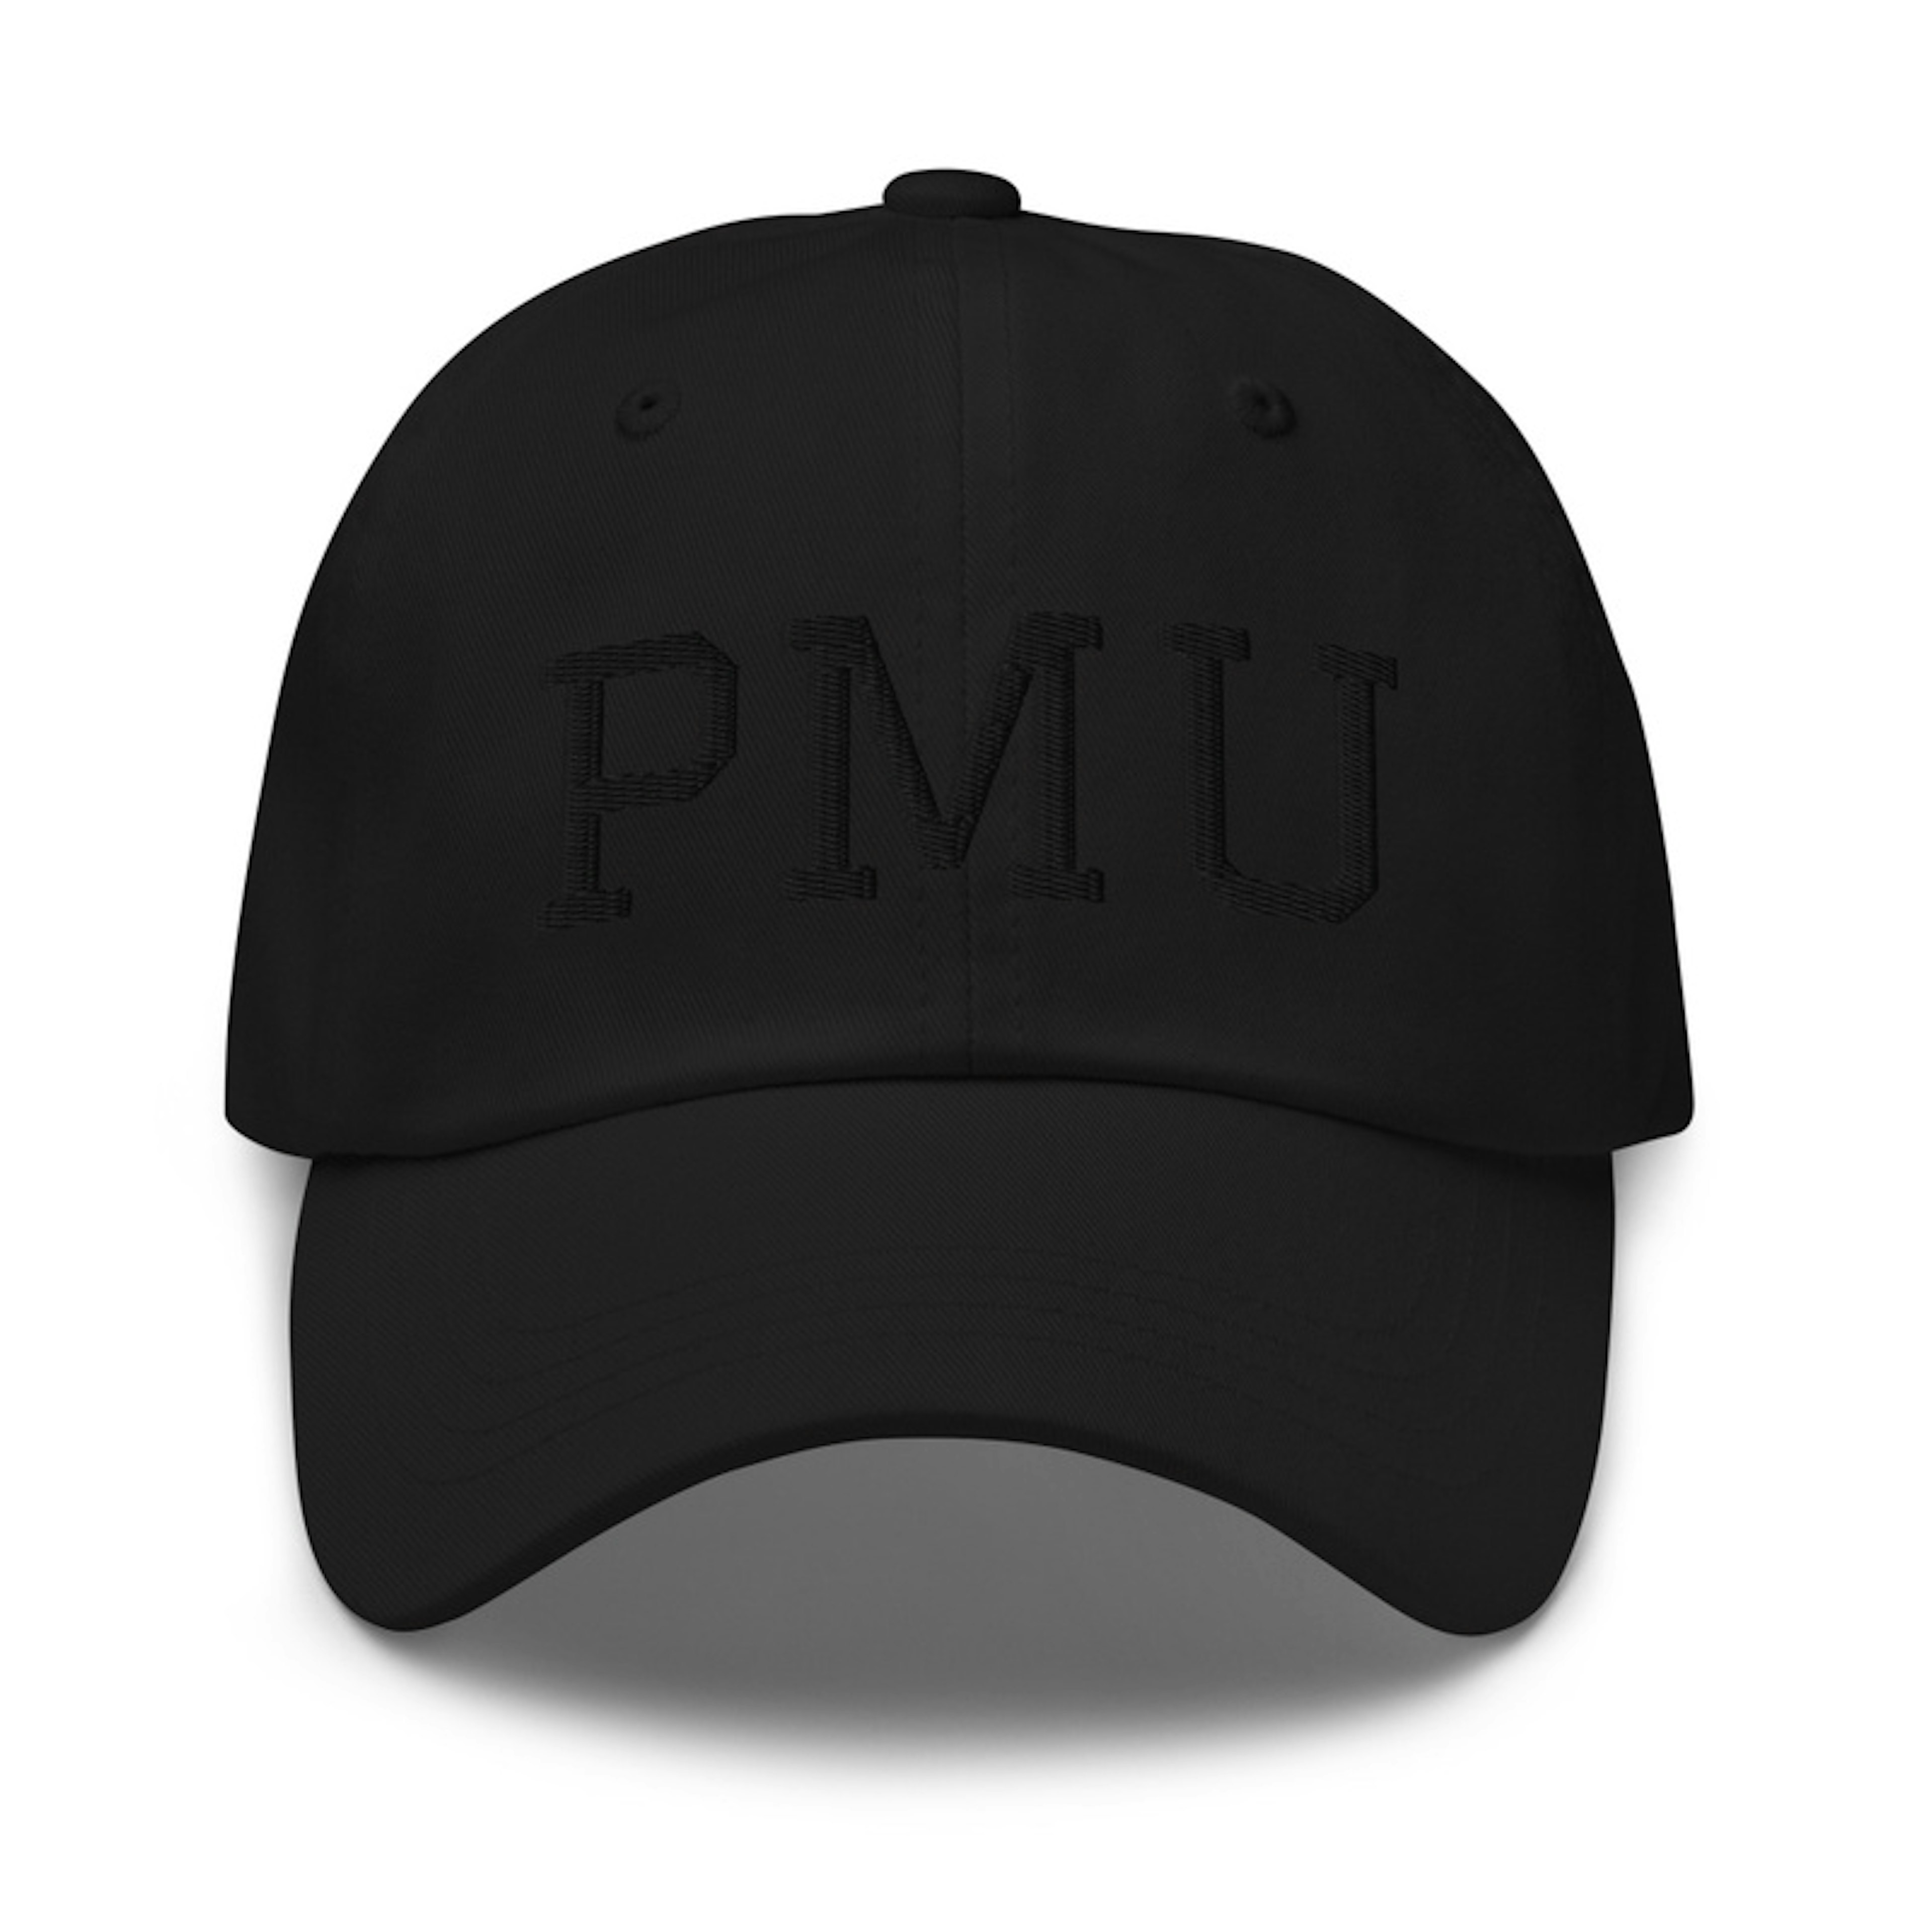 PMU- Black on Black